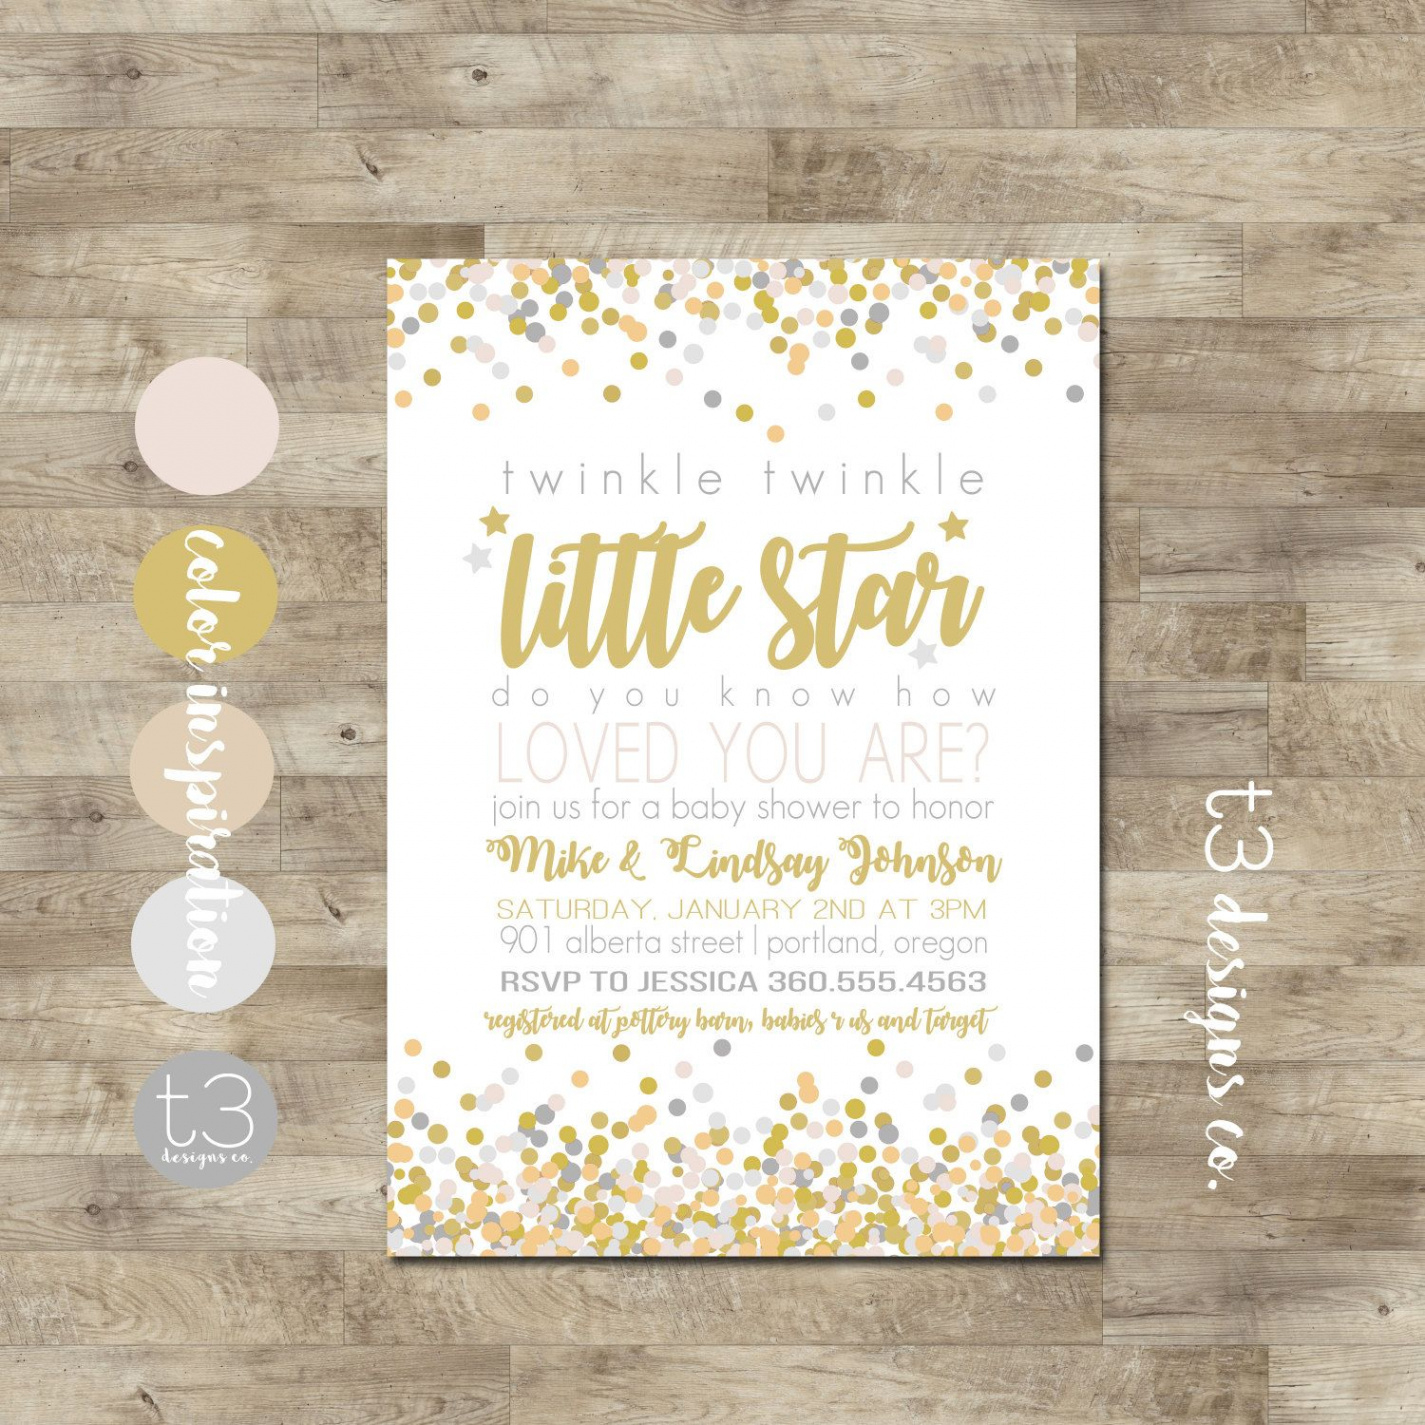 Free Printable Twinkle Twinkle Little Star Baby Shower Invitations - Free Printable Twinkle Twinkle Little Star Baby Shower Invitations